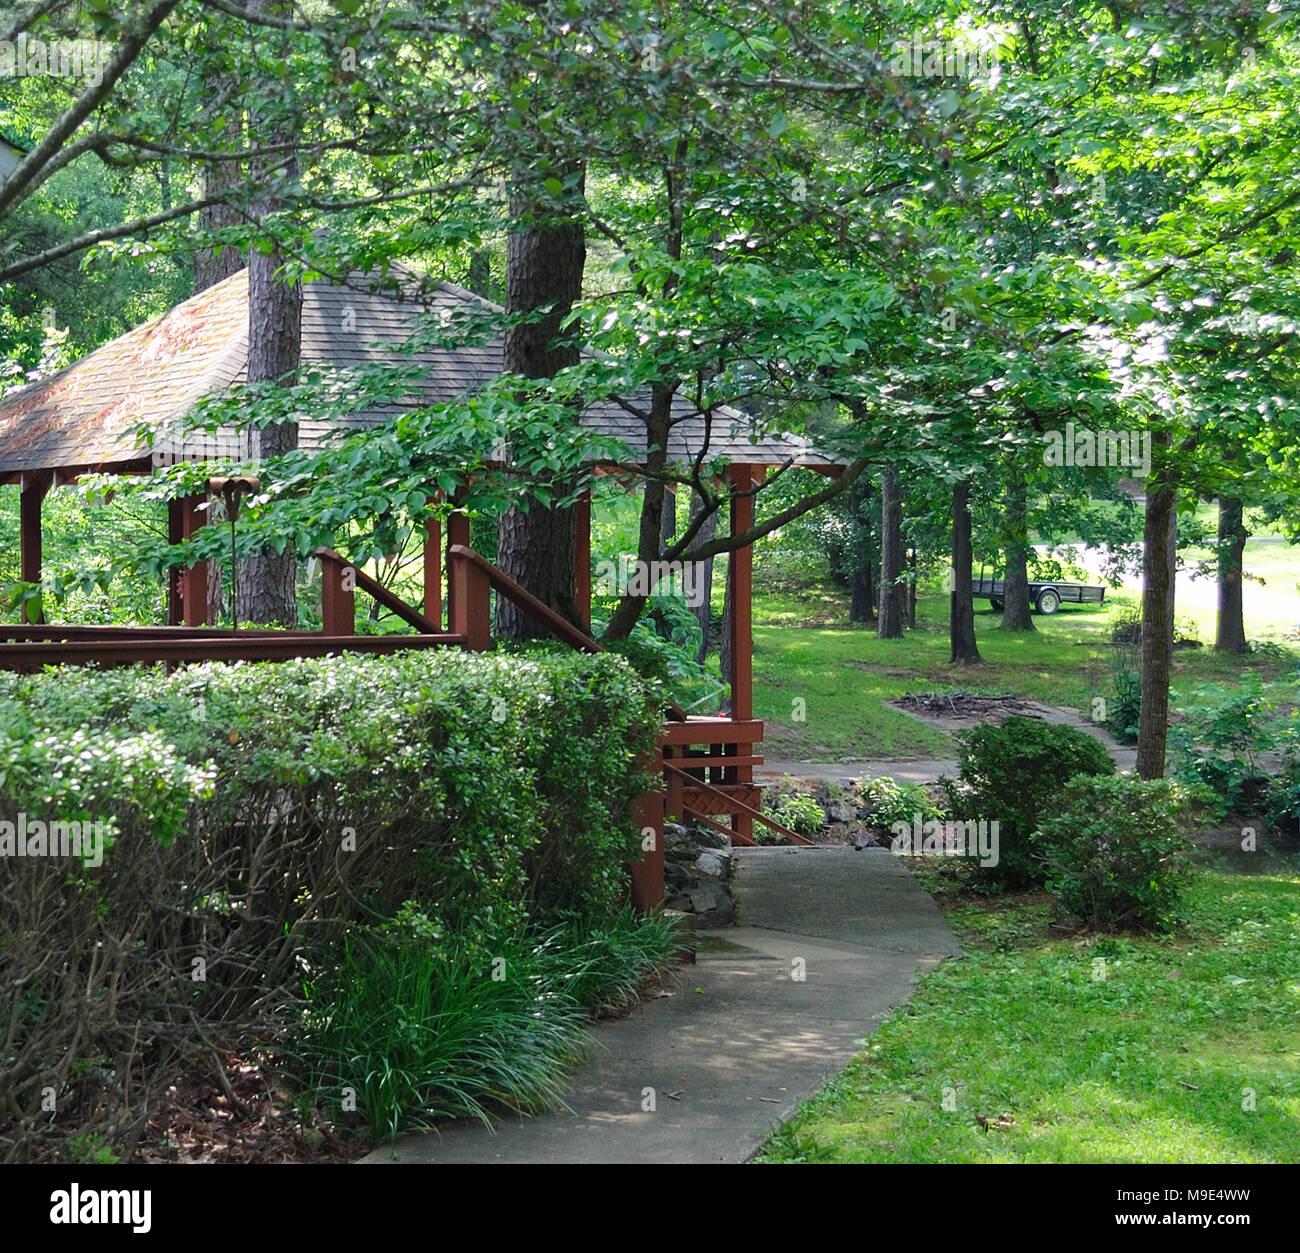 Überdachte Terrasse mit Pflanzen und Bäumen im Frühjahr/Sommer umgeben  Stockfotografie - Alamy